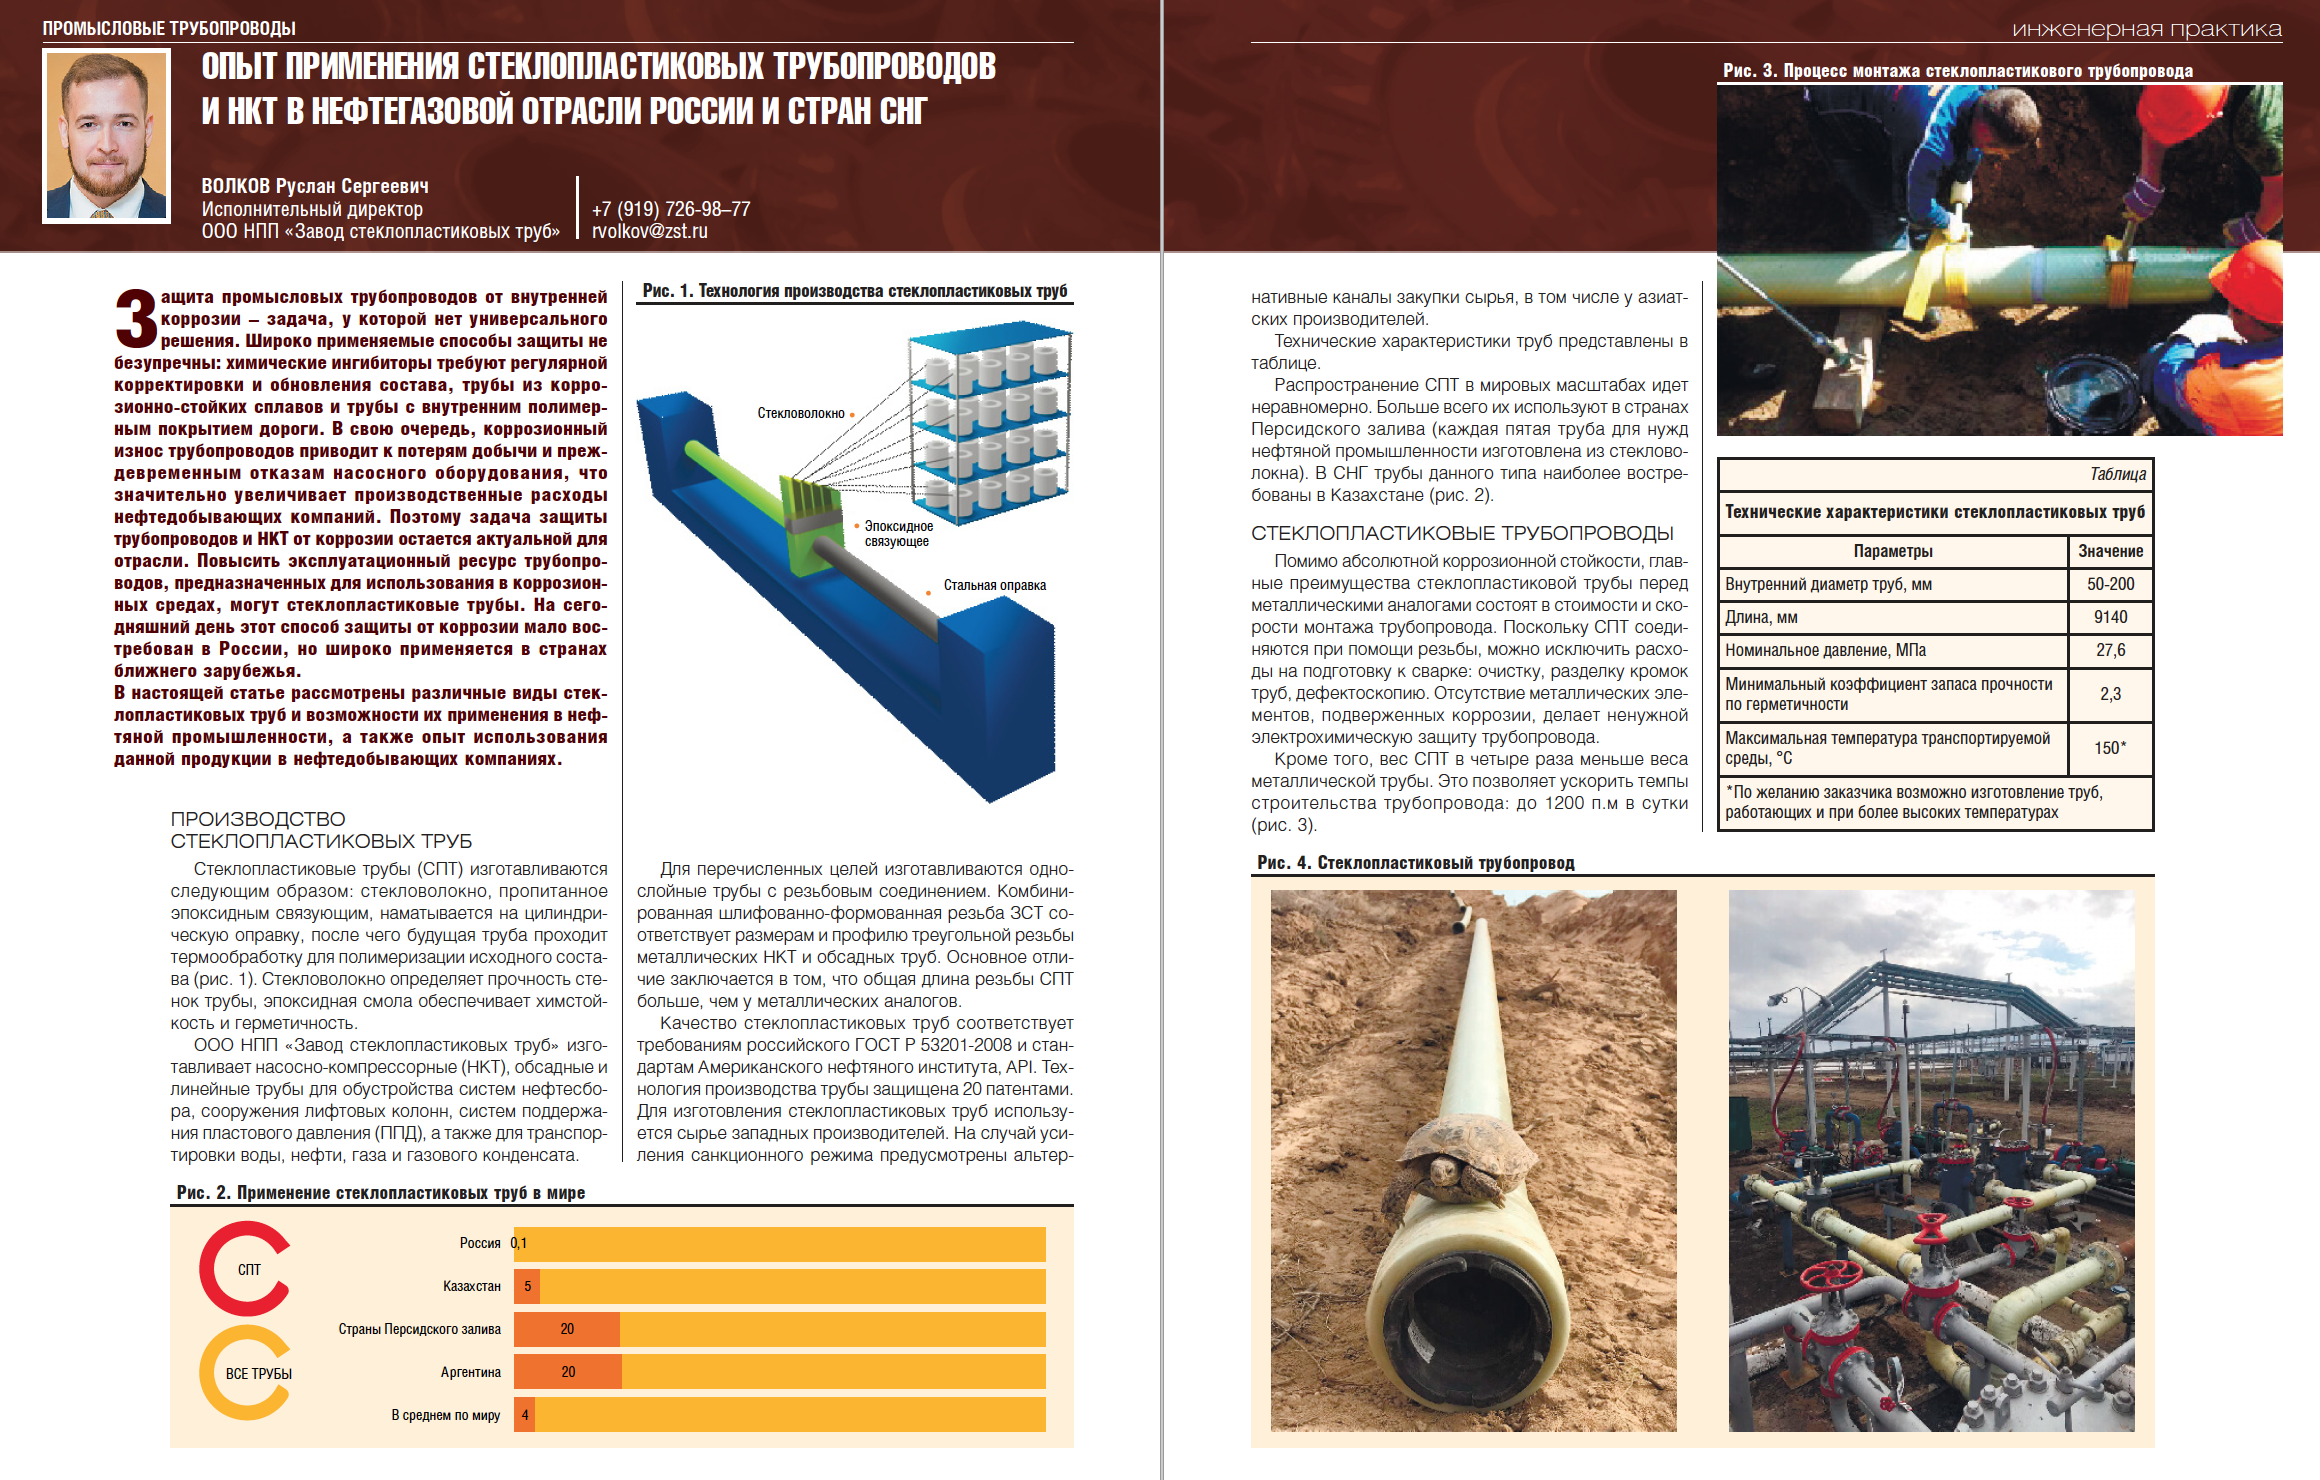 28836 Опыт применения стеклопластиковых трубопроводов и НКТ в нефтегазовой отрасли России и стран СНГ